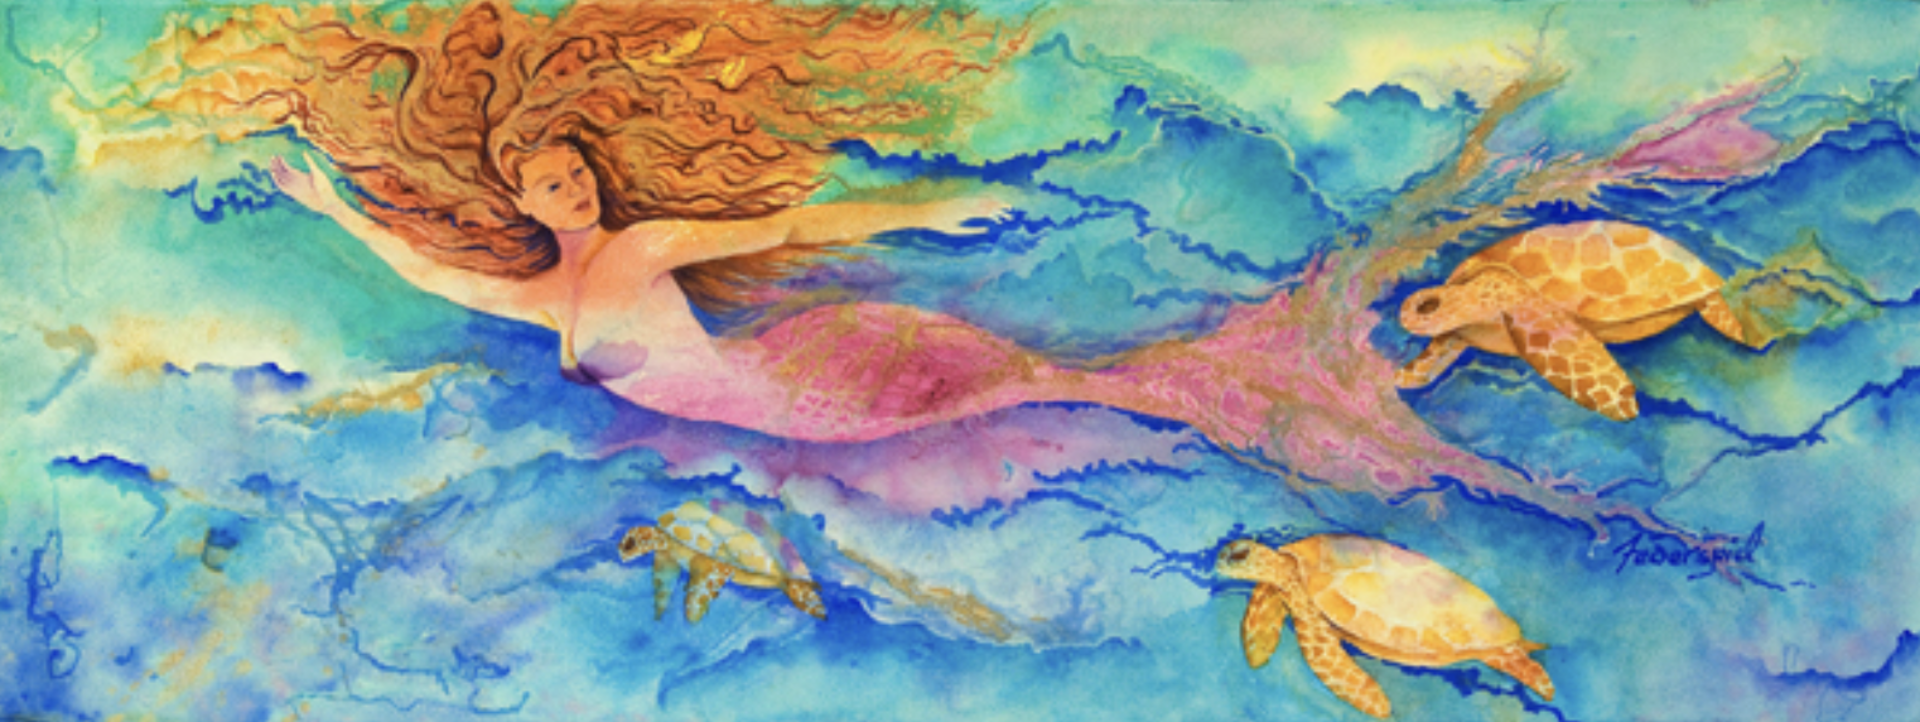 Follow Me Mermaid by Patrice Ann Federspiel